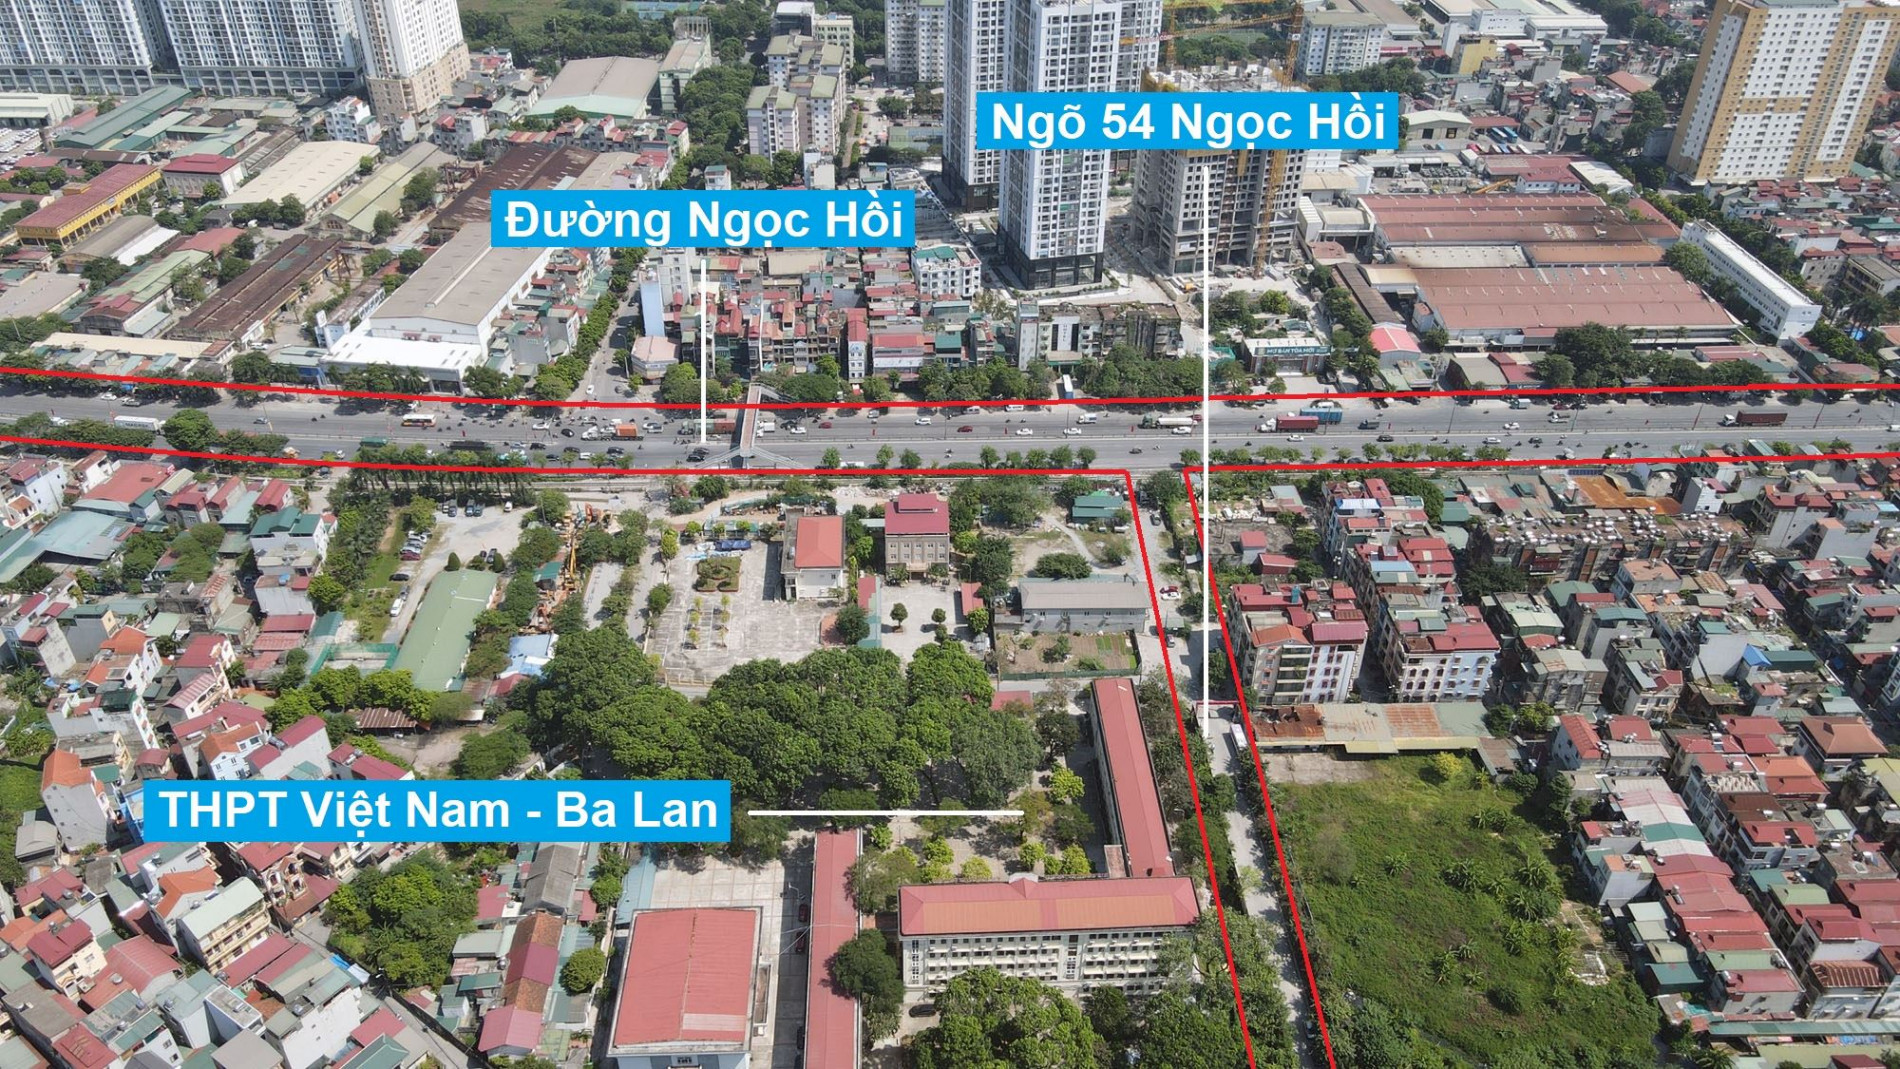 Đường sẽ mở theo quy hoạch ở phường Hoàng Liệt, Hoàng Mai, Hà Nội (phần 8)